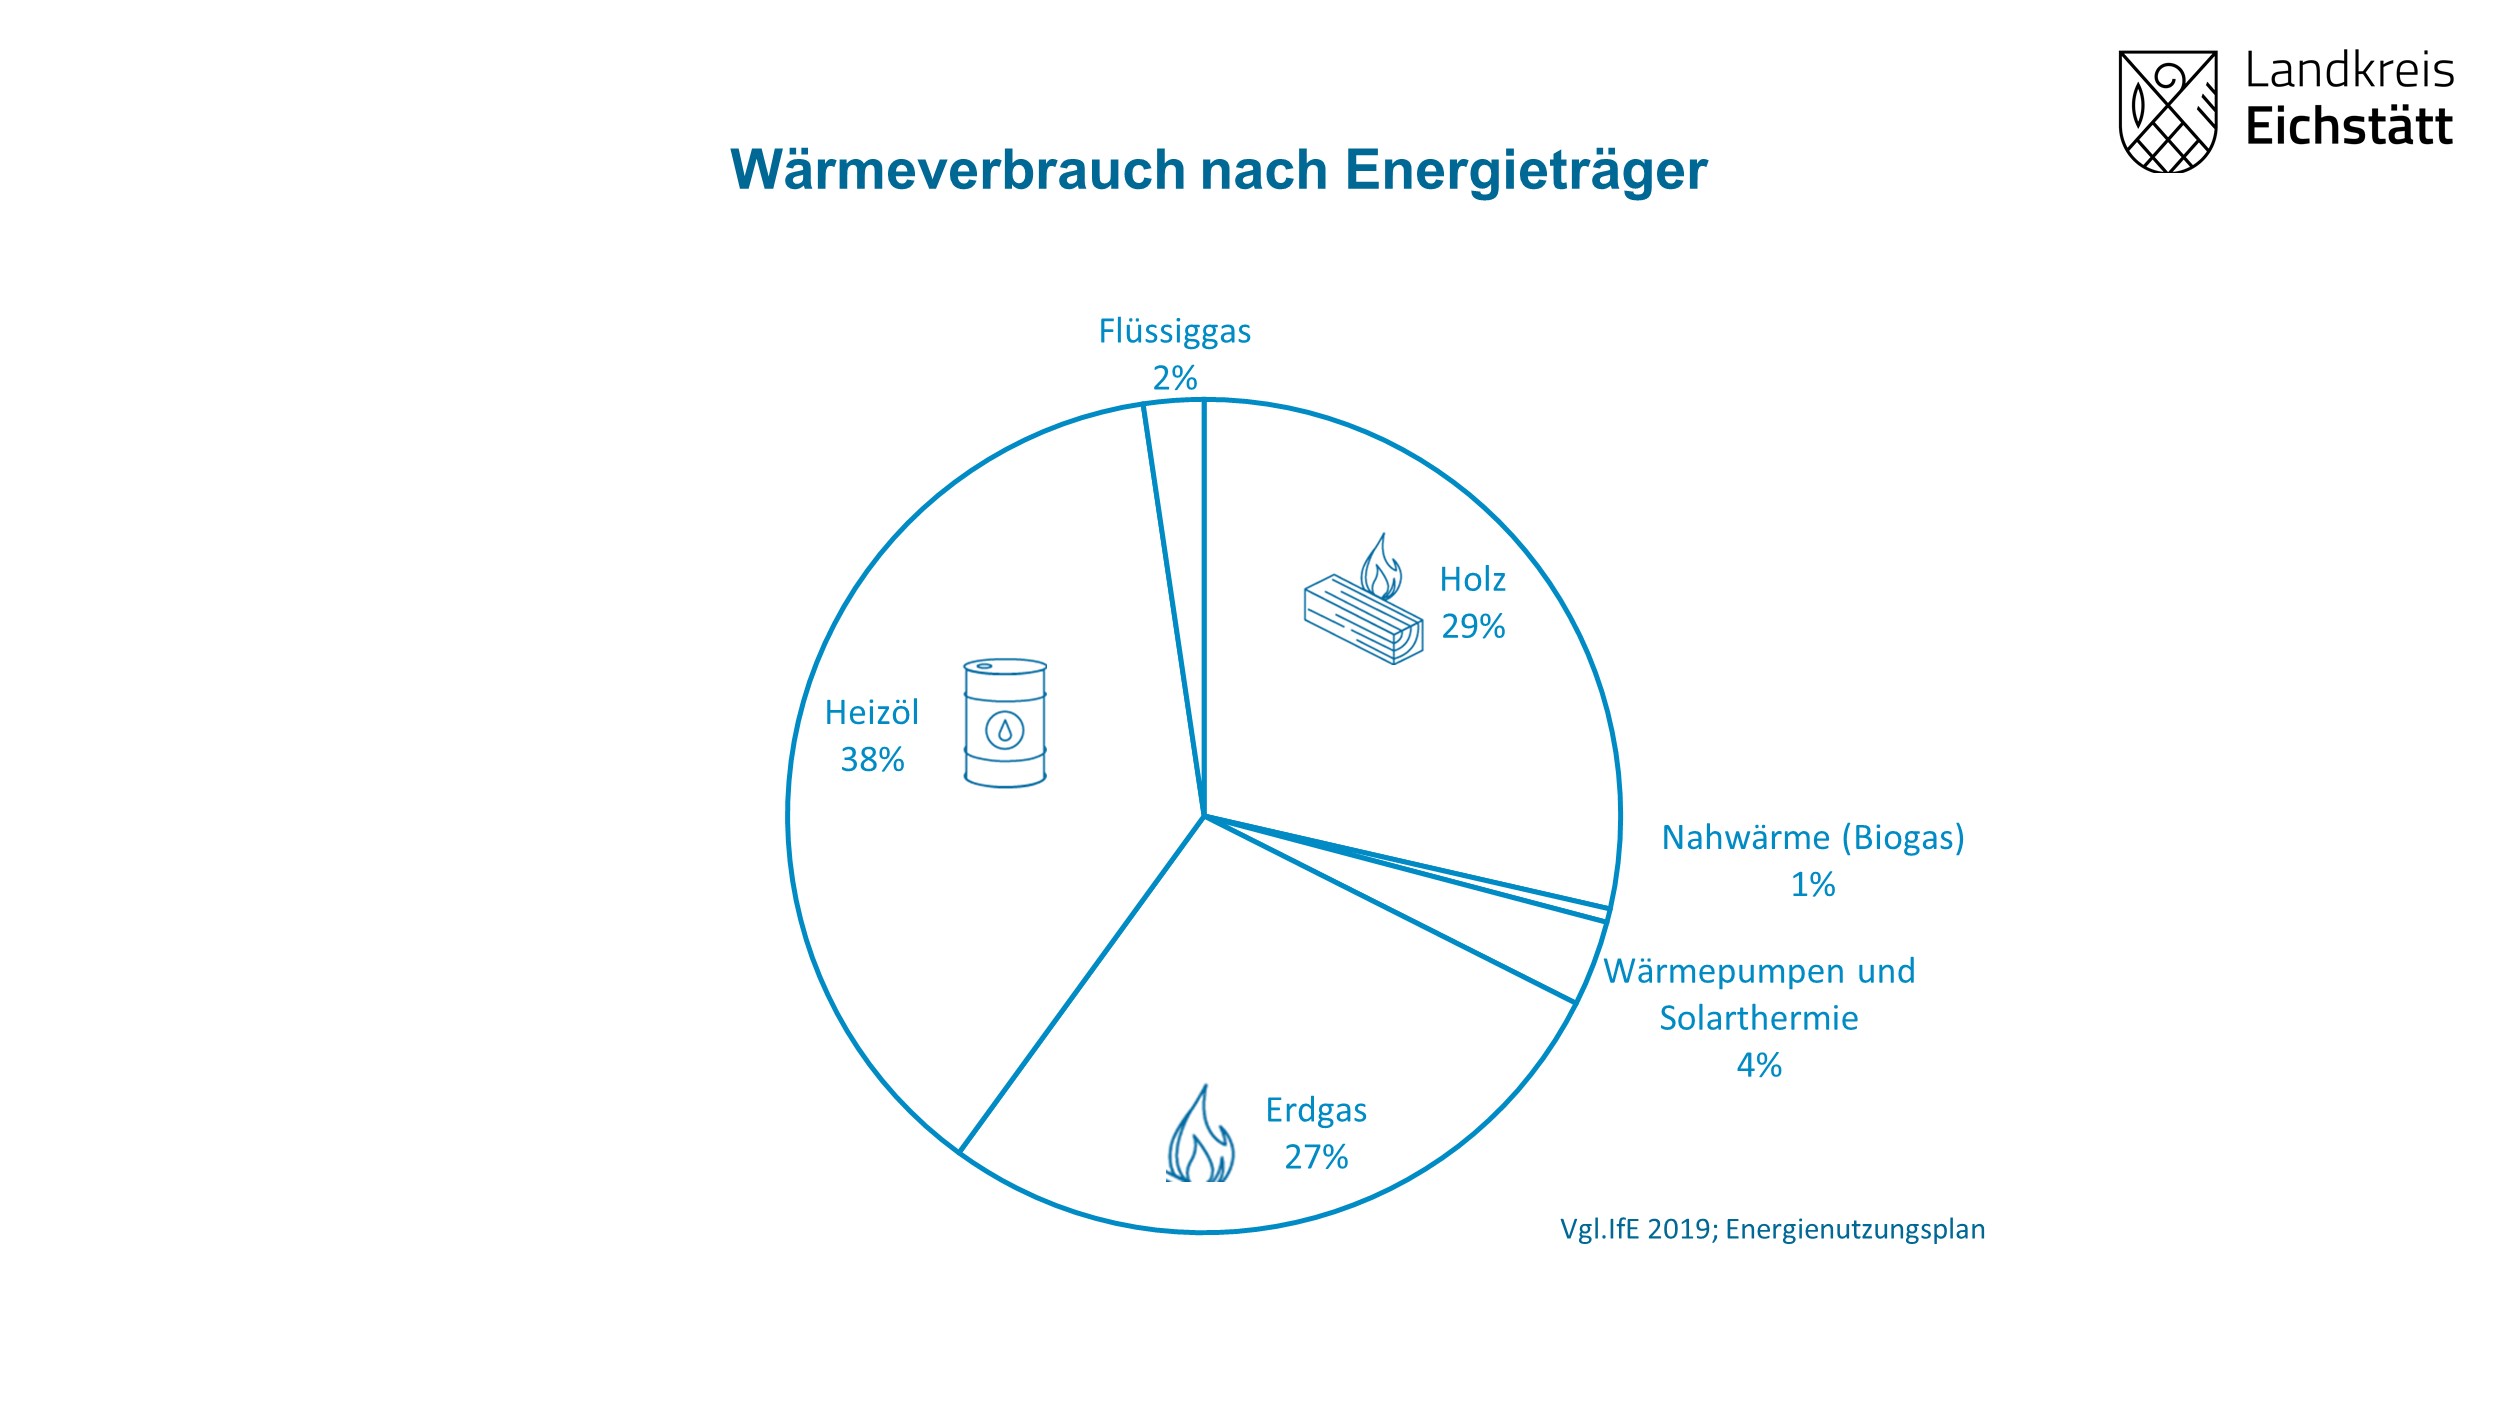 Kreisdiagramm Wärmeverbrauch nach Energieträger: Heizöl 38 %, Erdgas 27 % Flüssiggas 2 %, Holz 29 %, Nahwärme (Biogas) 1%, Wärmepumpen und Solarthermie 4 %; Vgl. lfE 2019 Energienutzungsplan